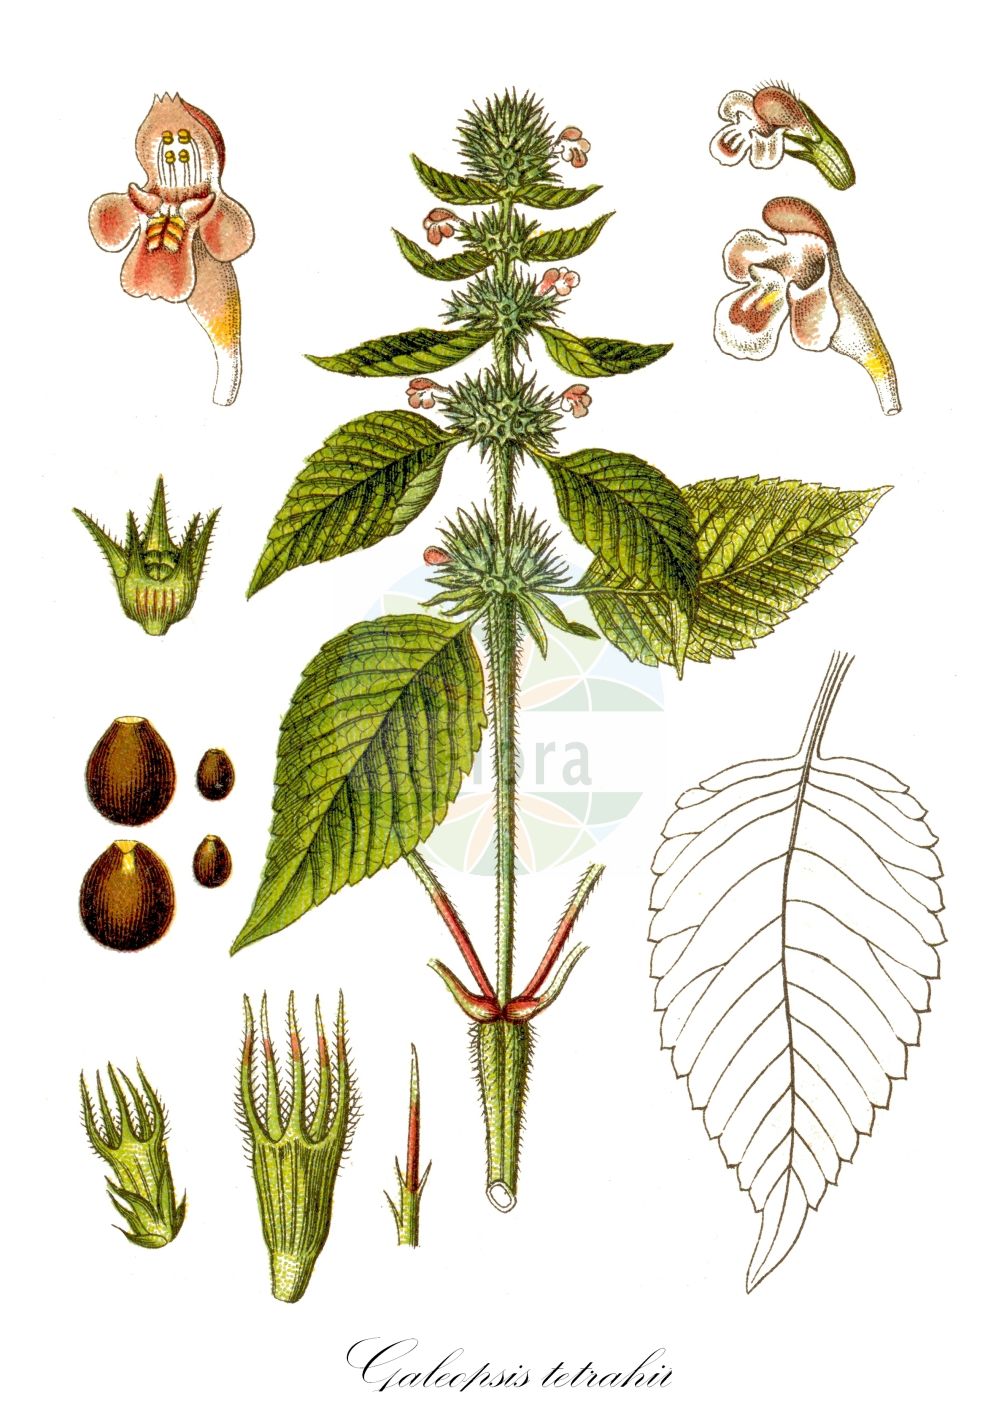 Historische Abbildung von Galeopsis tetrahit (Dorn-Hohlzahn - Common Hemp-nettle). Das Bild zeigt Blatt, Bluete, Frucht und Same. ---- Historical Drawing of Galeopsis tetrahit (Dorn-Hohlzahn - Common Hemp-nettle). The image is showing leaf, flower, fruit and seed.(Galeopsis tetrahit,Dorn-Hohlzahn,Common Hemp-nettle,Galeopsis alpicola,Galeopsis beckii,Galeopsis gacognei,Galeopsis glaucocerata,Galeopsis ionantha,Galeopsis lactiflora,Galeopsis laramberguei,Galeopsis leucantha,Galeopsis michelianae,Galeopsis neglecta,Galeopsis nodosum,Galeopsis persetosa,Galeopsis praecox,Galeopsis pseudotetrahit,Galeopsis reichenbachii,Galeopsis silvestris,Galeopsis subtatrensis,Galeopsis tetrahit,Galeopsis urticifolia,Galeopsis verlotii,Ladanum tetrahit,Lamium tetrahit,Tetrahit grandiflorum,Tetrahit leucanthum,Tetrahit navieri,Tetrahit nodosum,Tetrahit praecox,Tetrahit purpurascens,Tetrahit reichenbachii,Dorn-Hohlzahn,Stechender Hohlzahn,Common Hemp-nettle,Brittlestem Hempnettle,Galeopsis,Hohlzahn,Hempnettle,Lamiaceae,Lippenblütengewächse,Nettle family,Blatt,Bluete,Frucht,Same,leaf,flower,fruit,seed,Sturm (1796f))